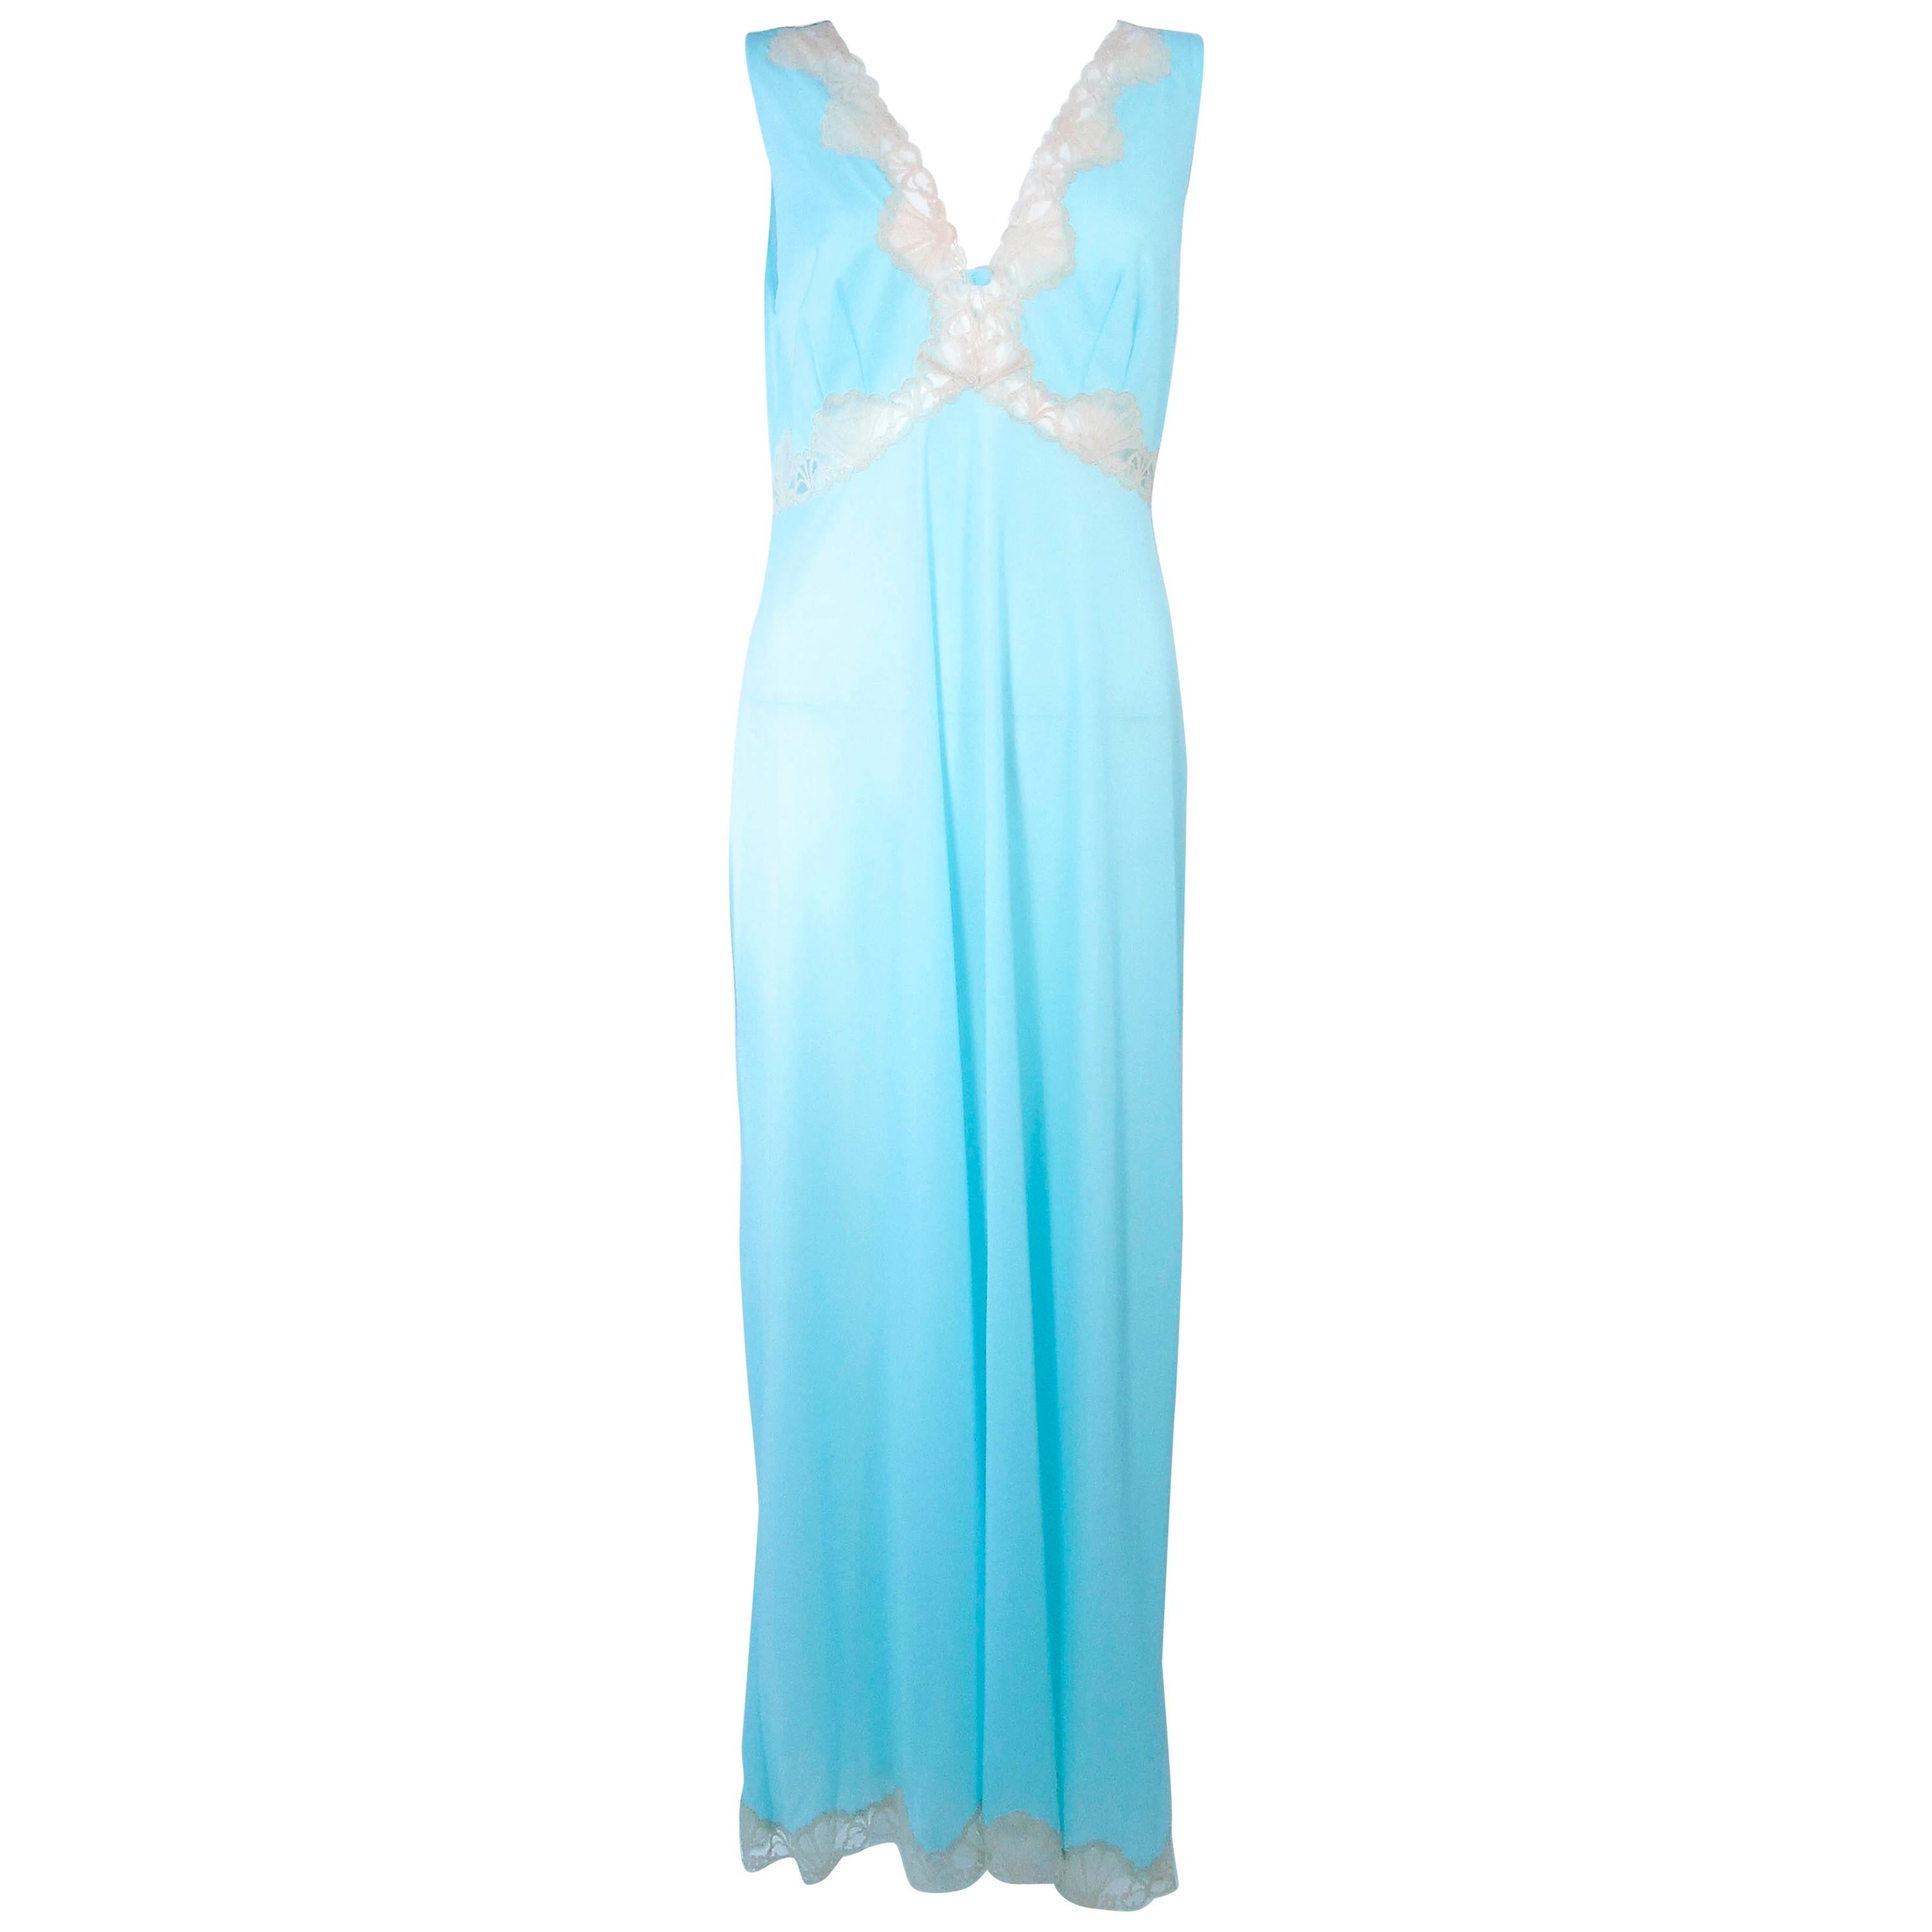 EMILIO PUCCI 'Formfit Rogers' Light Blue Nude Lace Trim Slip Dress NWT Size M